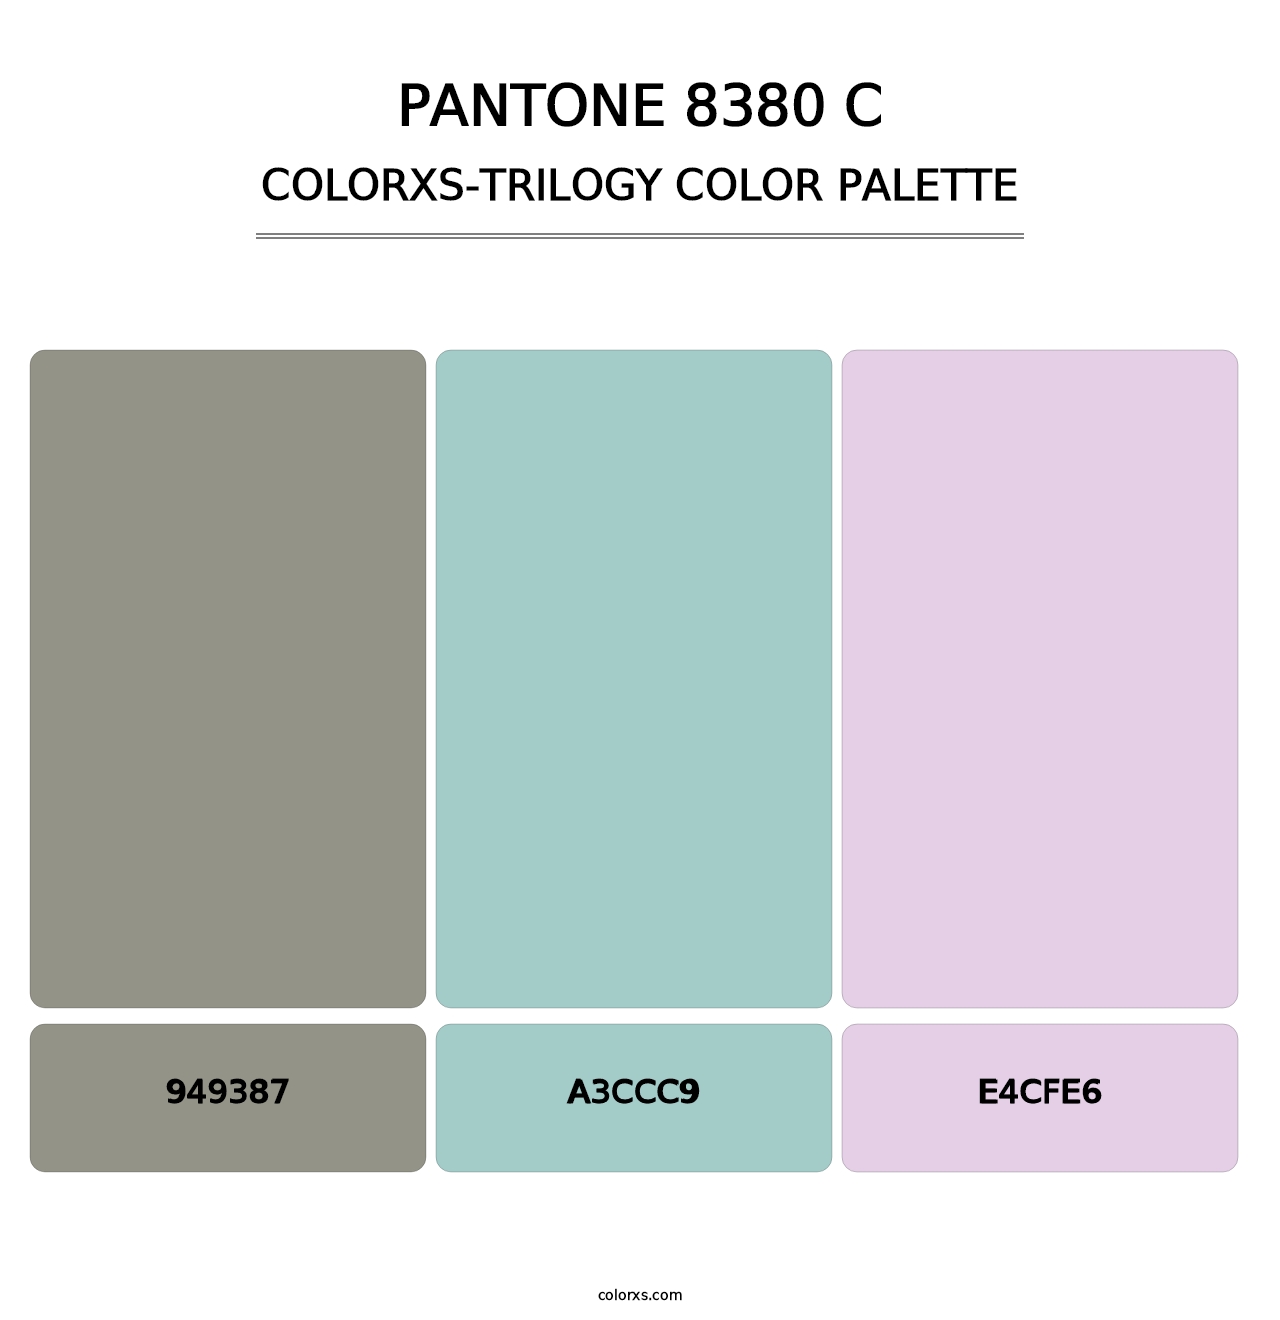 PANTONE 8380 C - Colorxs Trilogy Palette